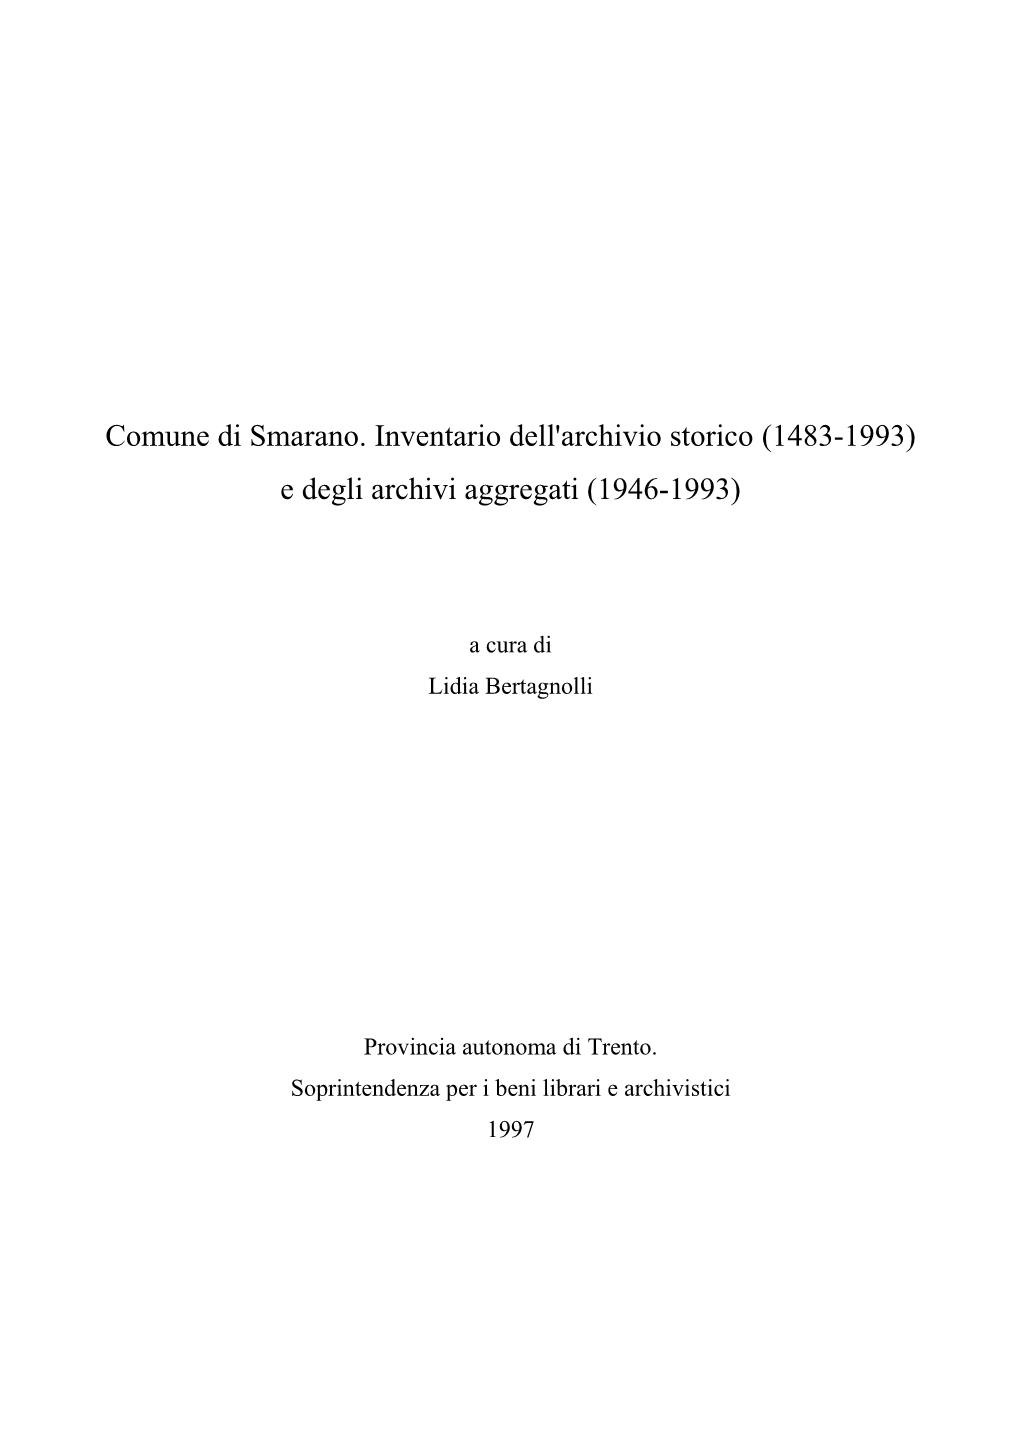 Comune Di Smarano. Inventario Dell'archivio Storico (1483-1993) E Degli Archivi Aggregati (1946-1993)